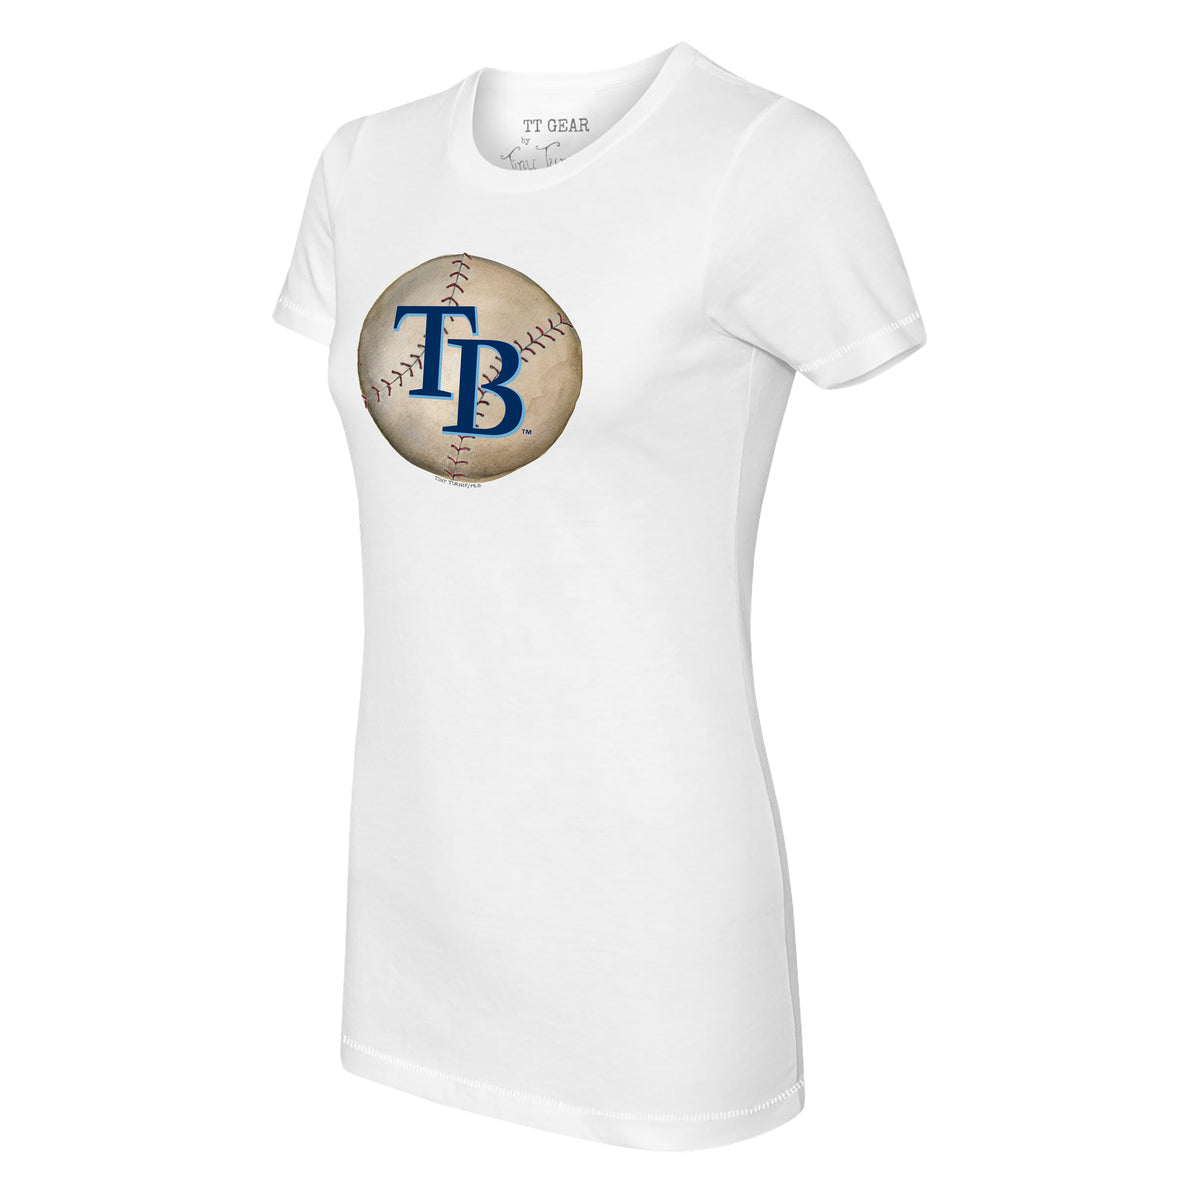 Tiny Turnip Tampa Bay Rays Dirt Ball Tee Shirt Women's Large / White